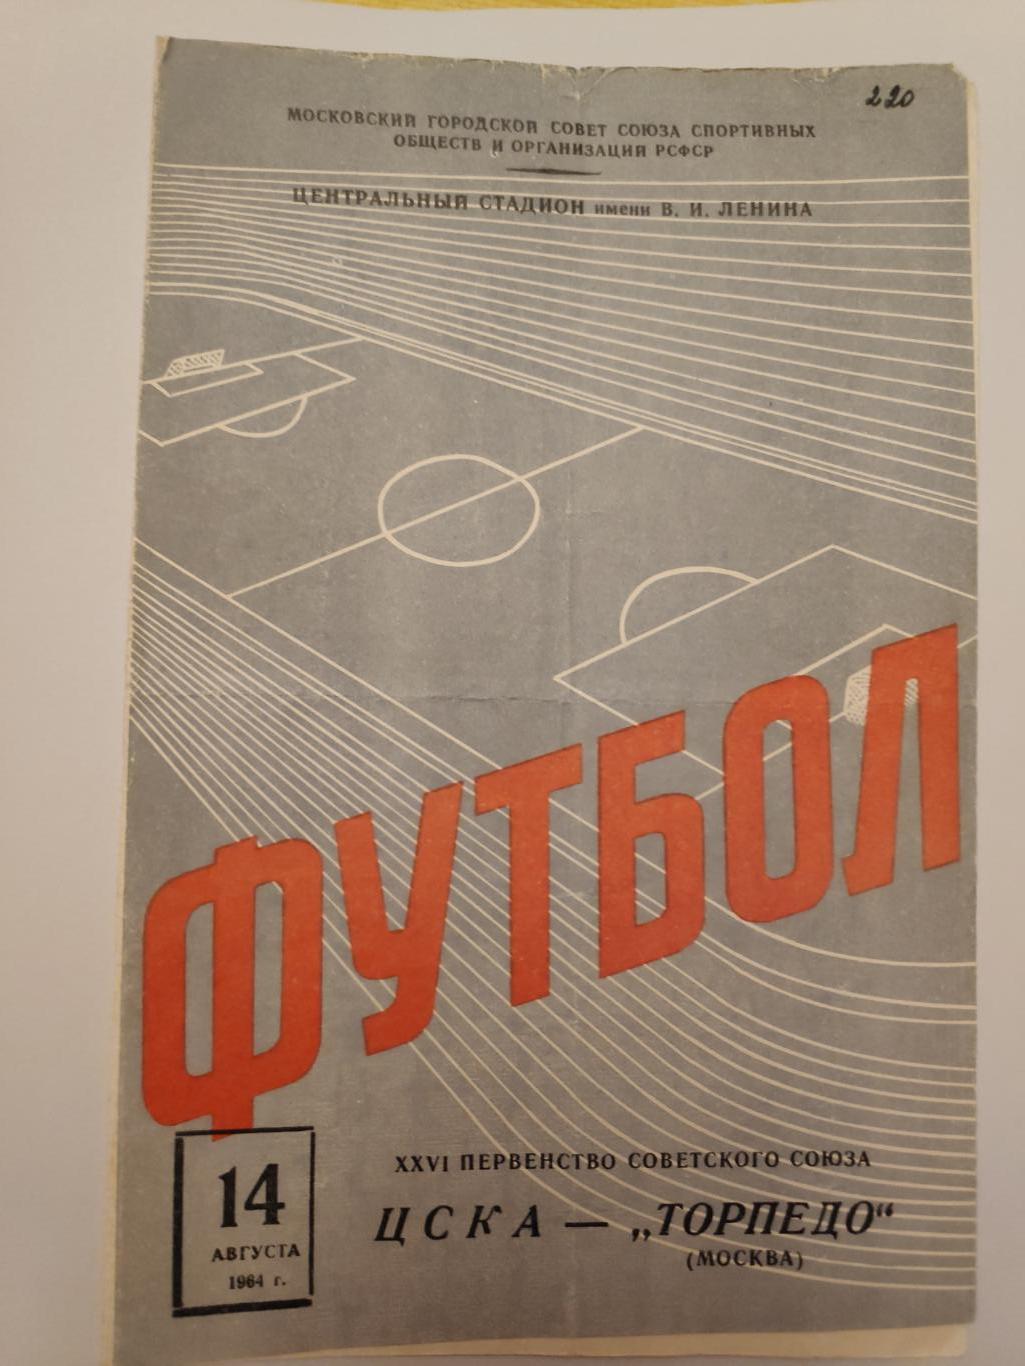 ЦСКА -Торпедо (Москва) 14 августа 1964 г.